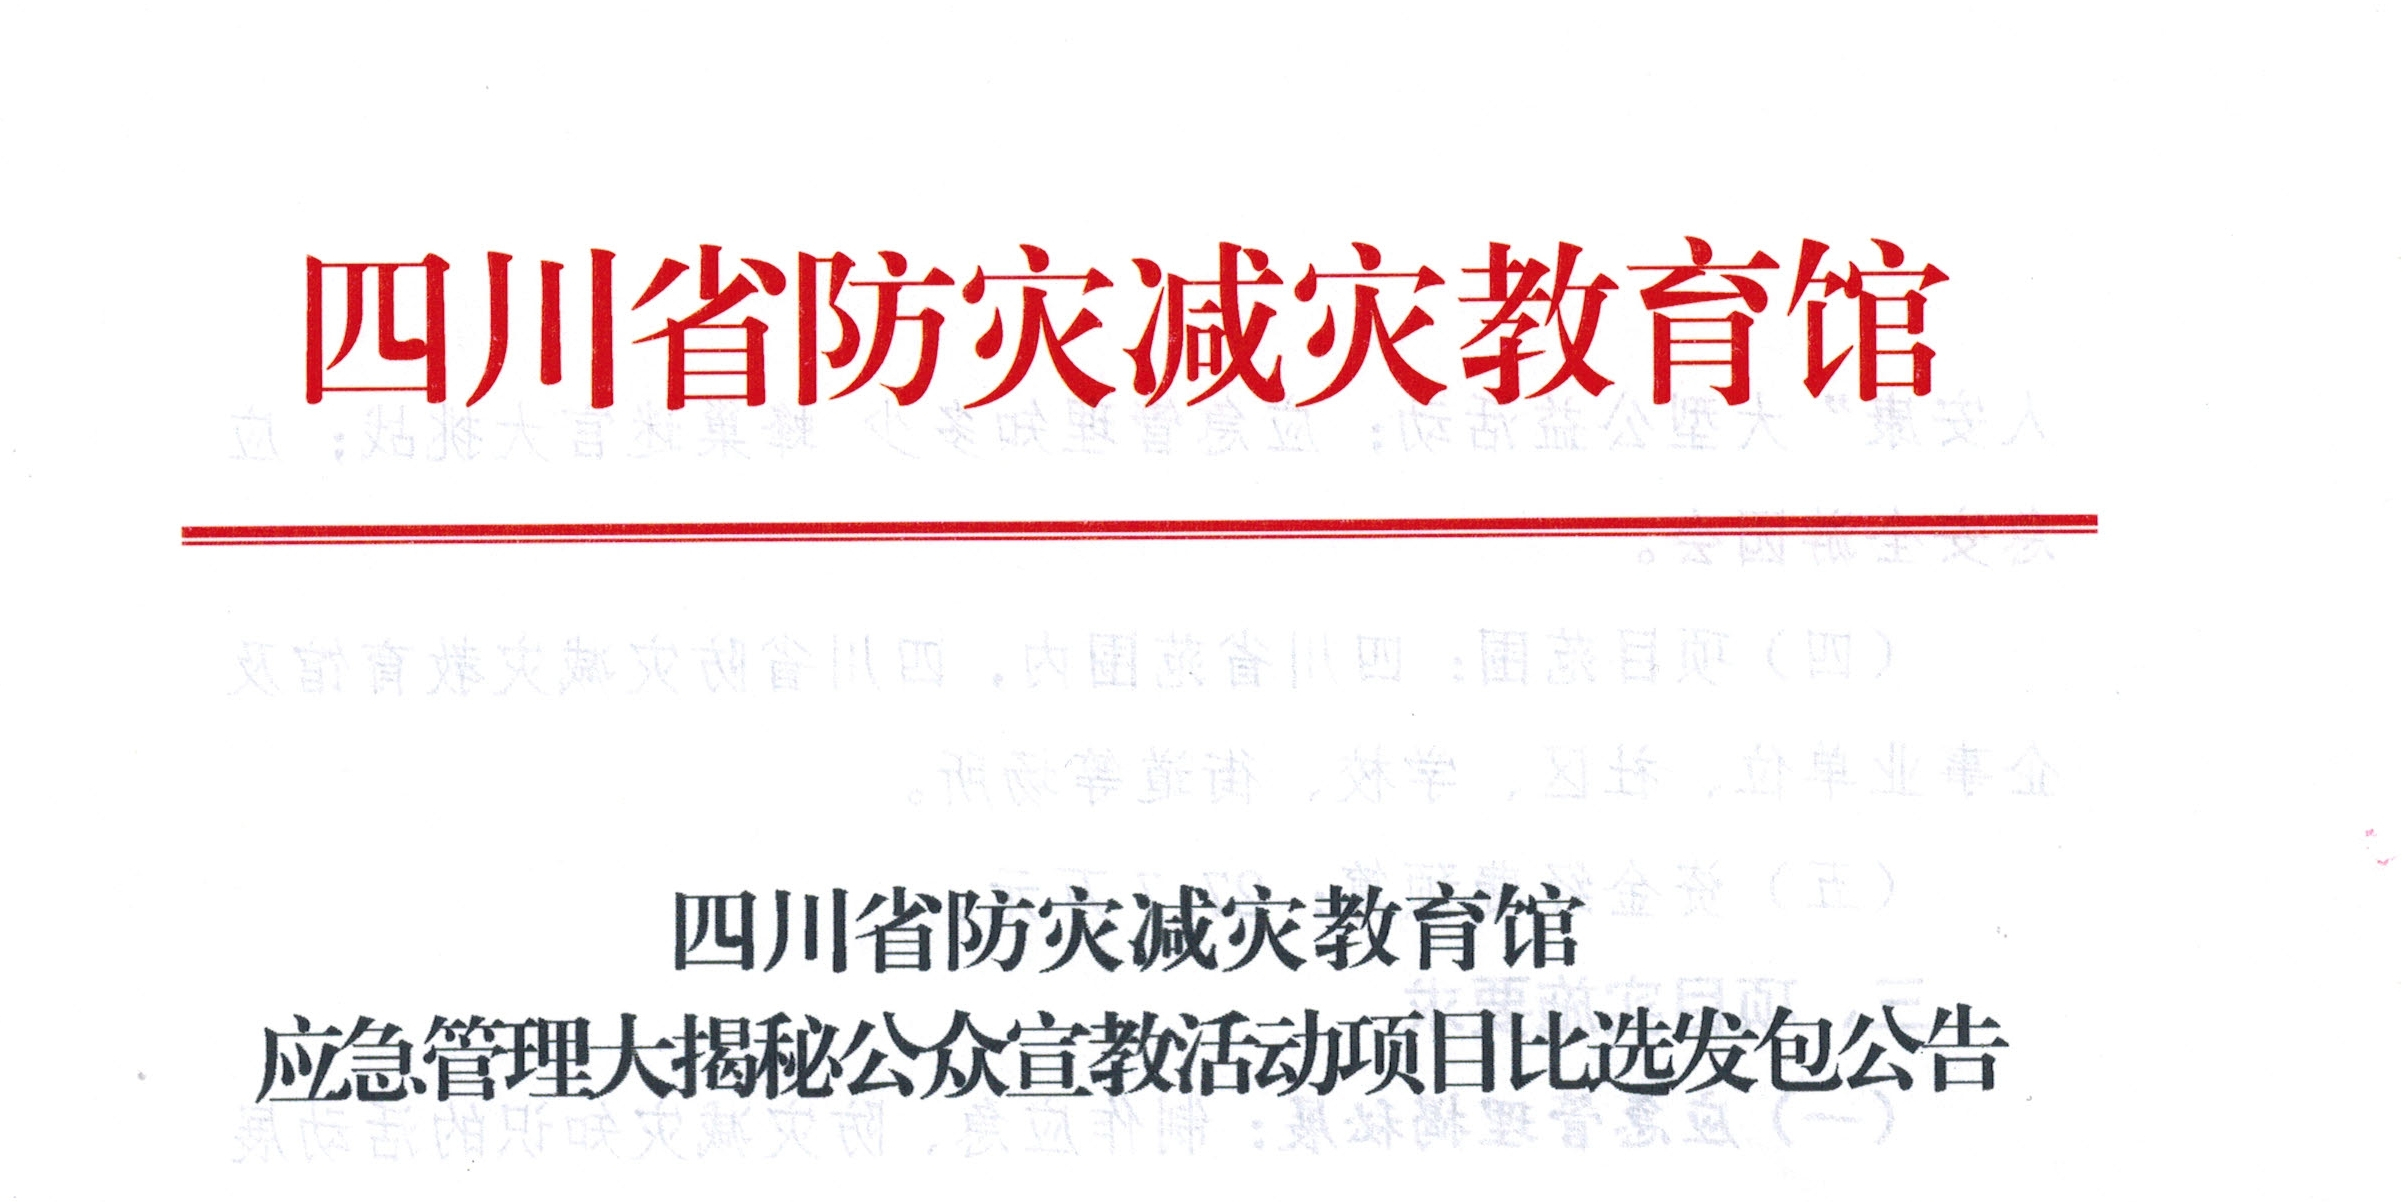 四川省防灾减灾教育馆应急管理大揭秘公众宣教活动项目比选发包公告